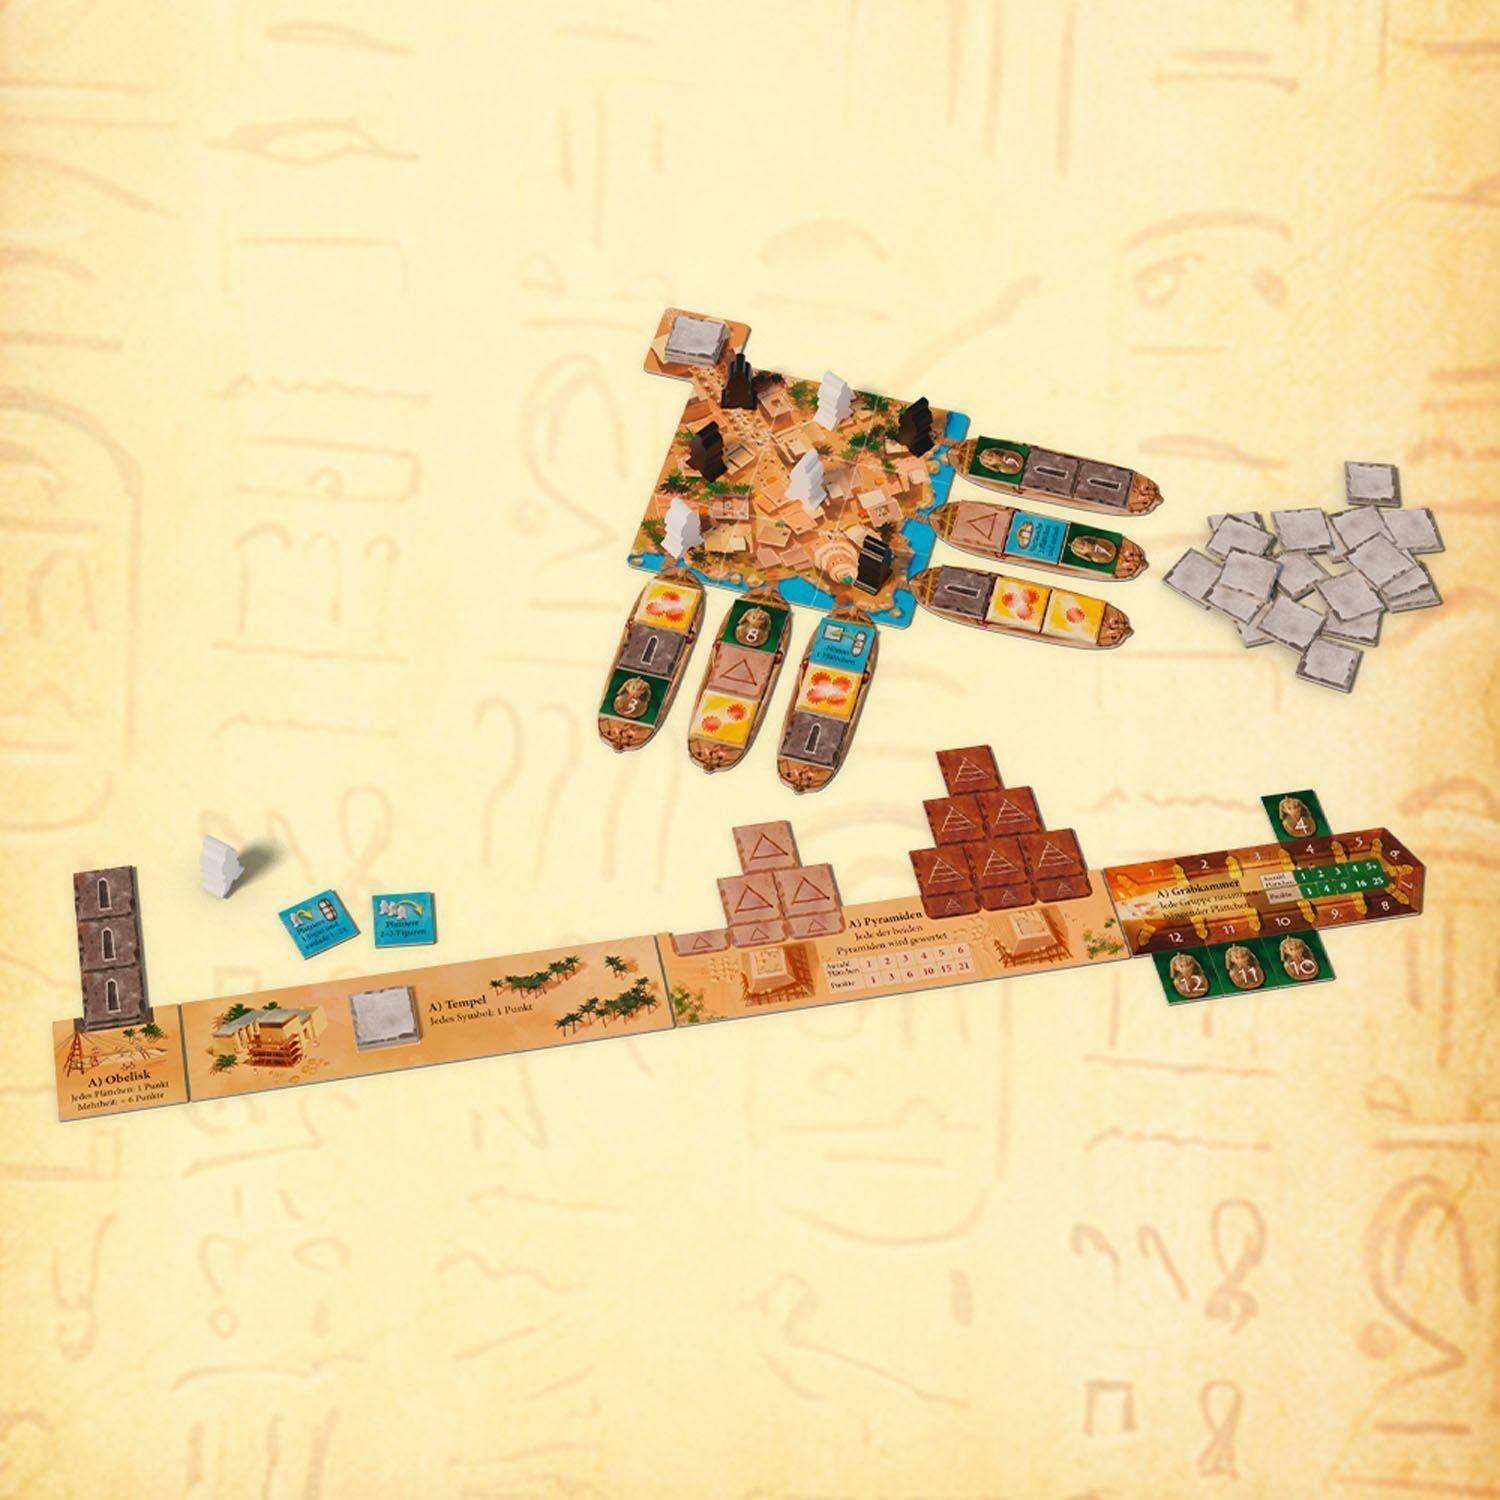 Kosmos Das Duell Spiel, Imhotep -